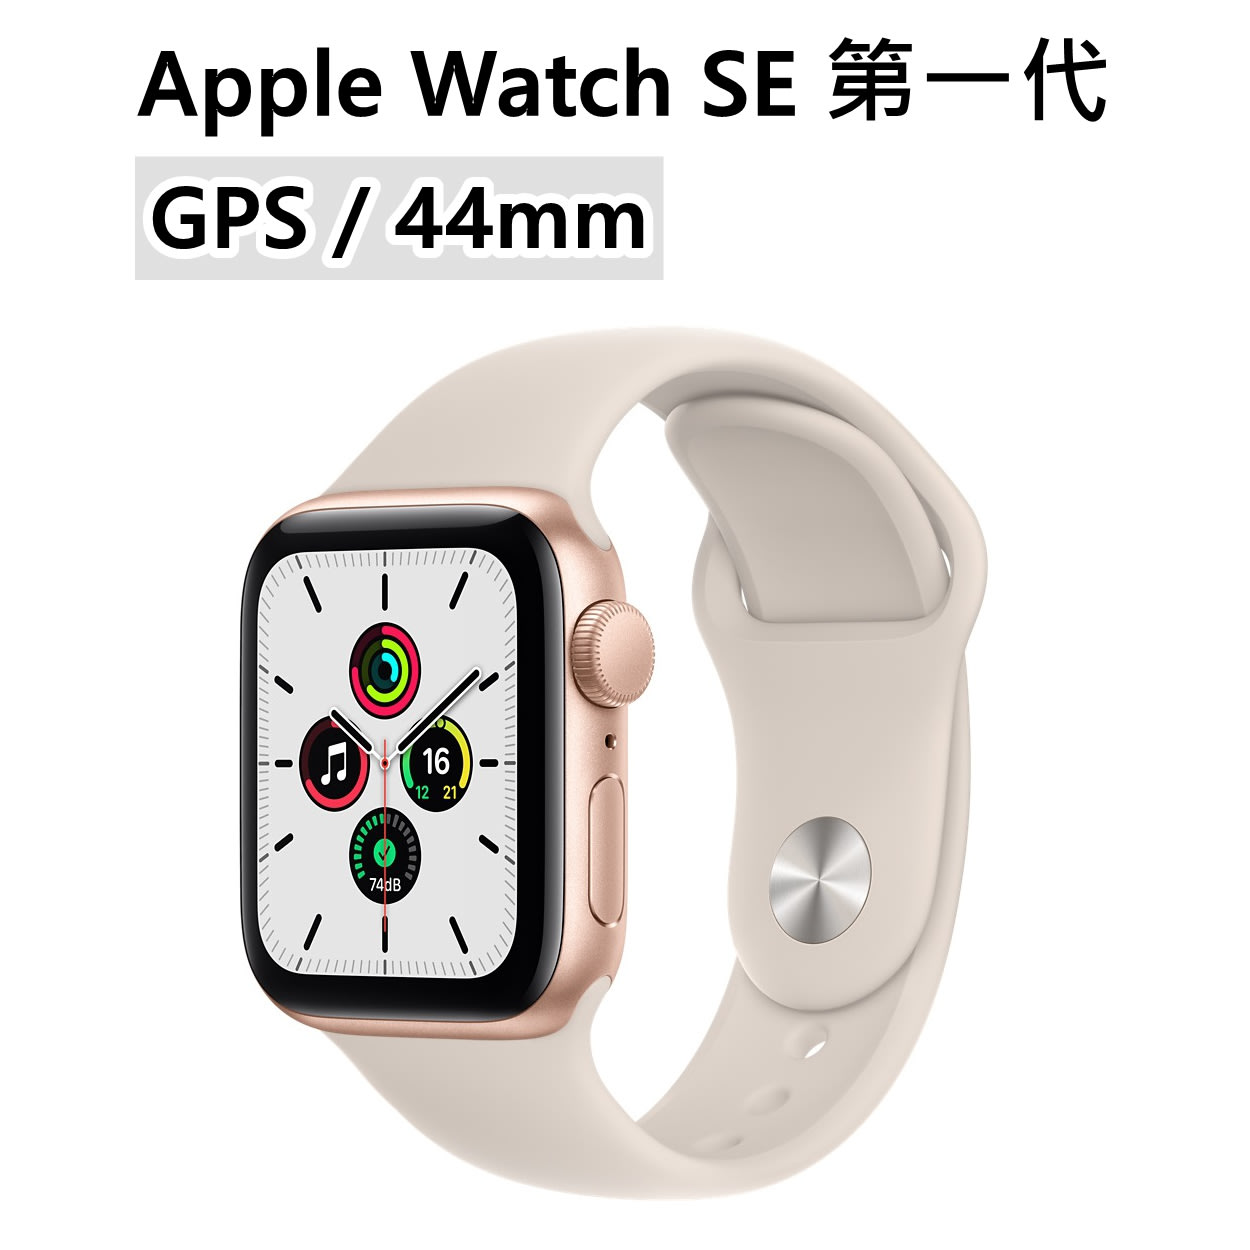 全新Apple Watch SE 1代第一代44mm GPS 金星光色鋁金屬錶殼運動